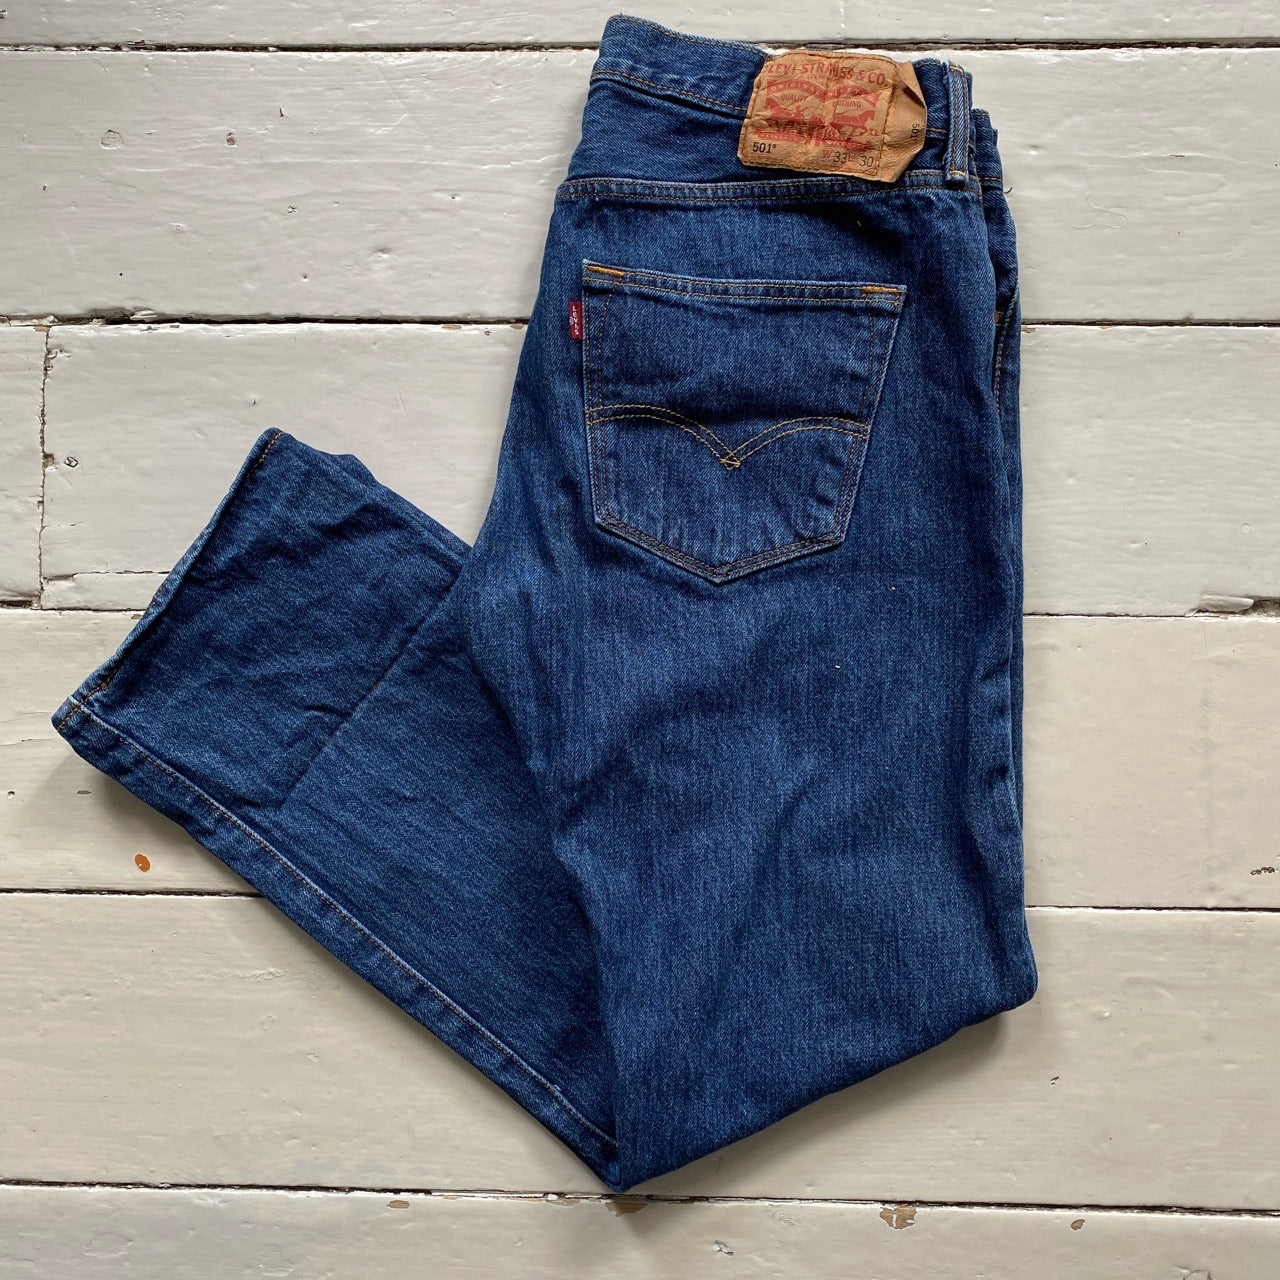 Levis 501 Blue Jeans (34/30)